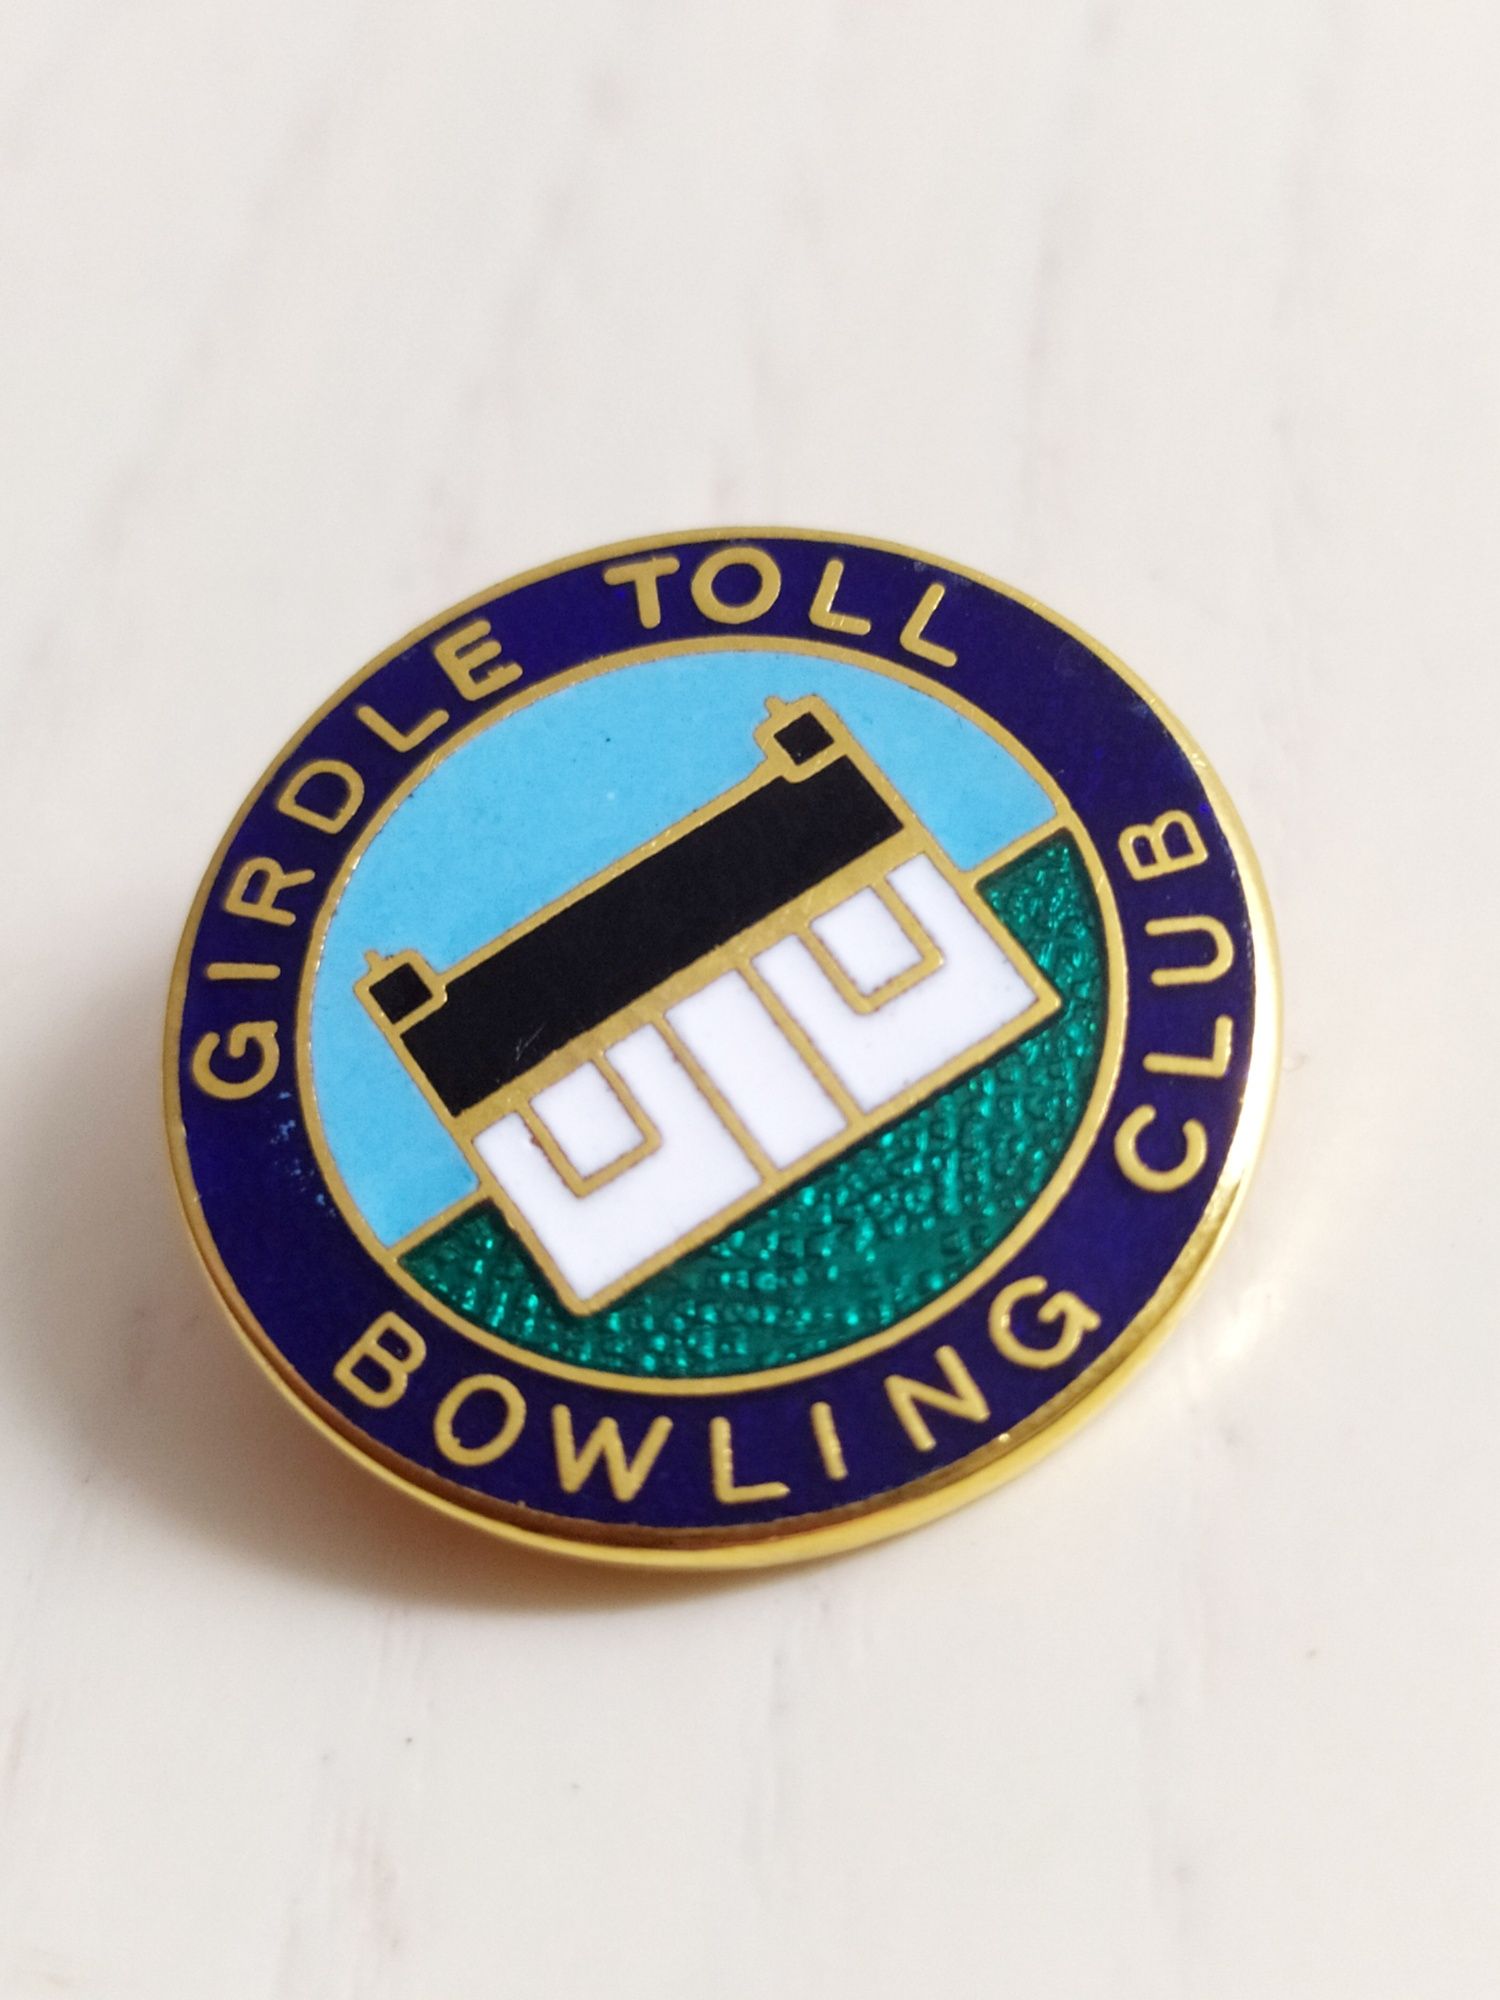 Из Шотландии значок Bowling Club домик коттедж Scotland England